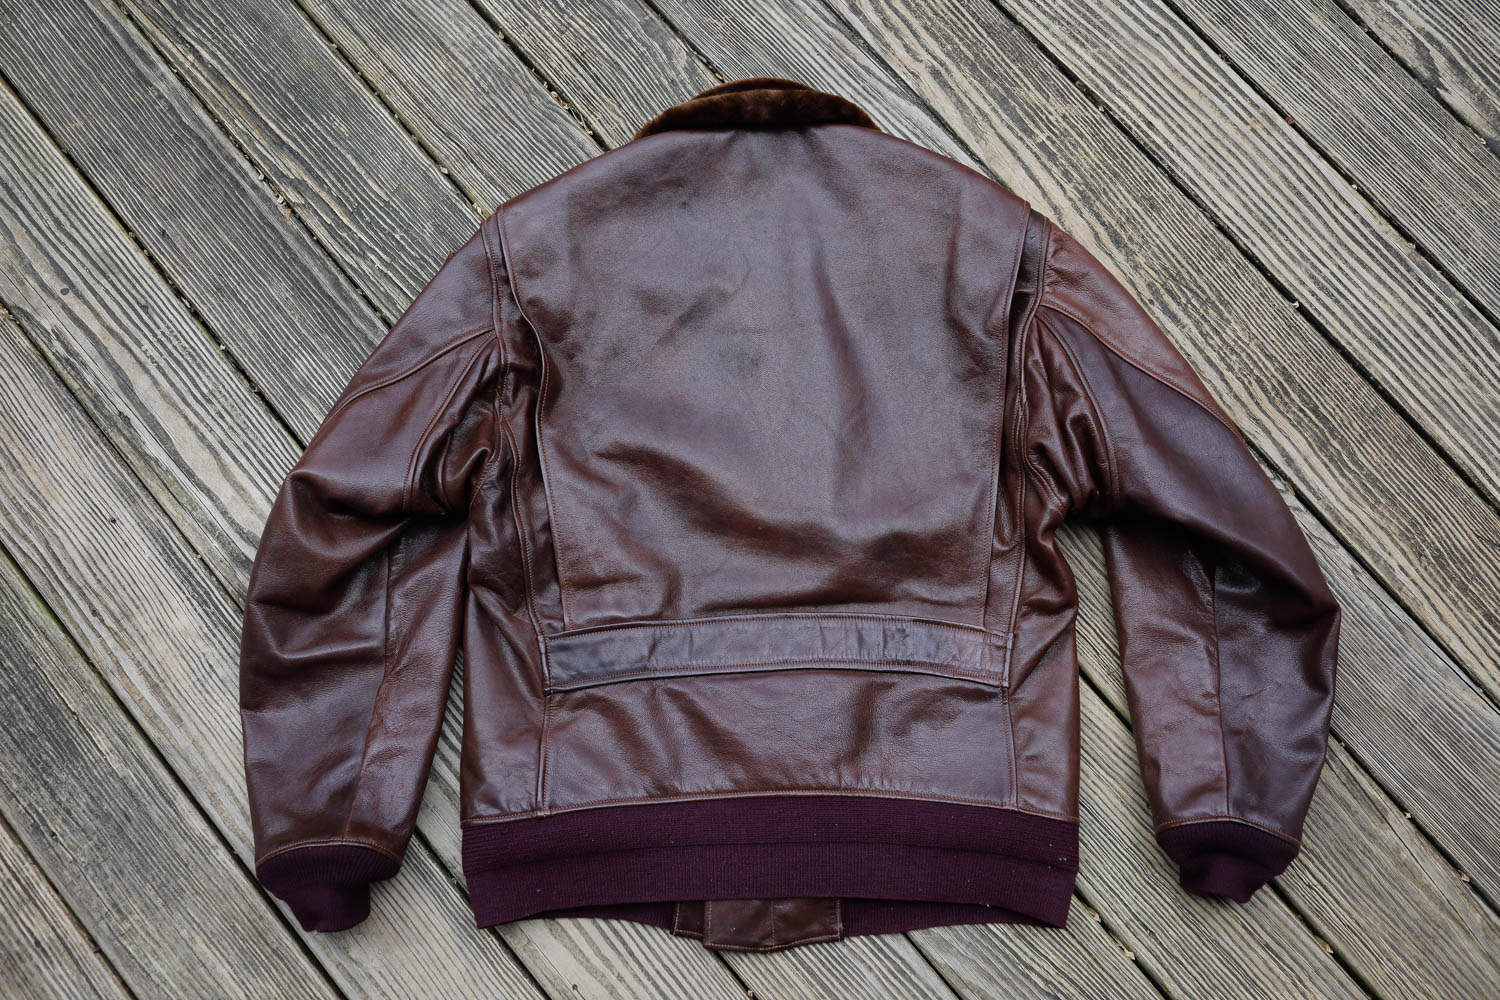 jacket-sales-feb23-kunja-6.jpg